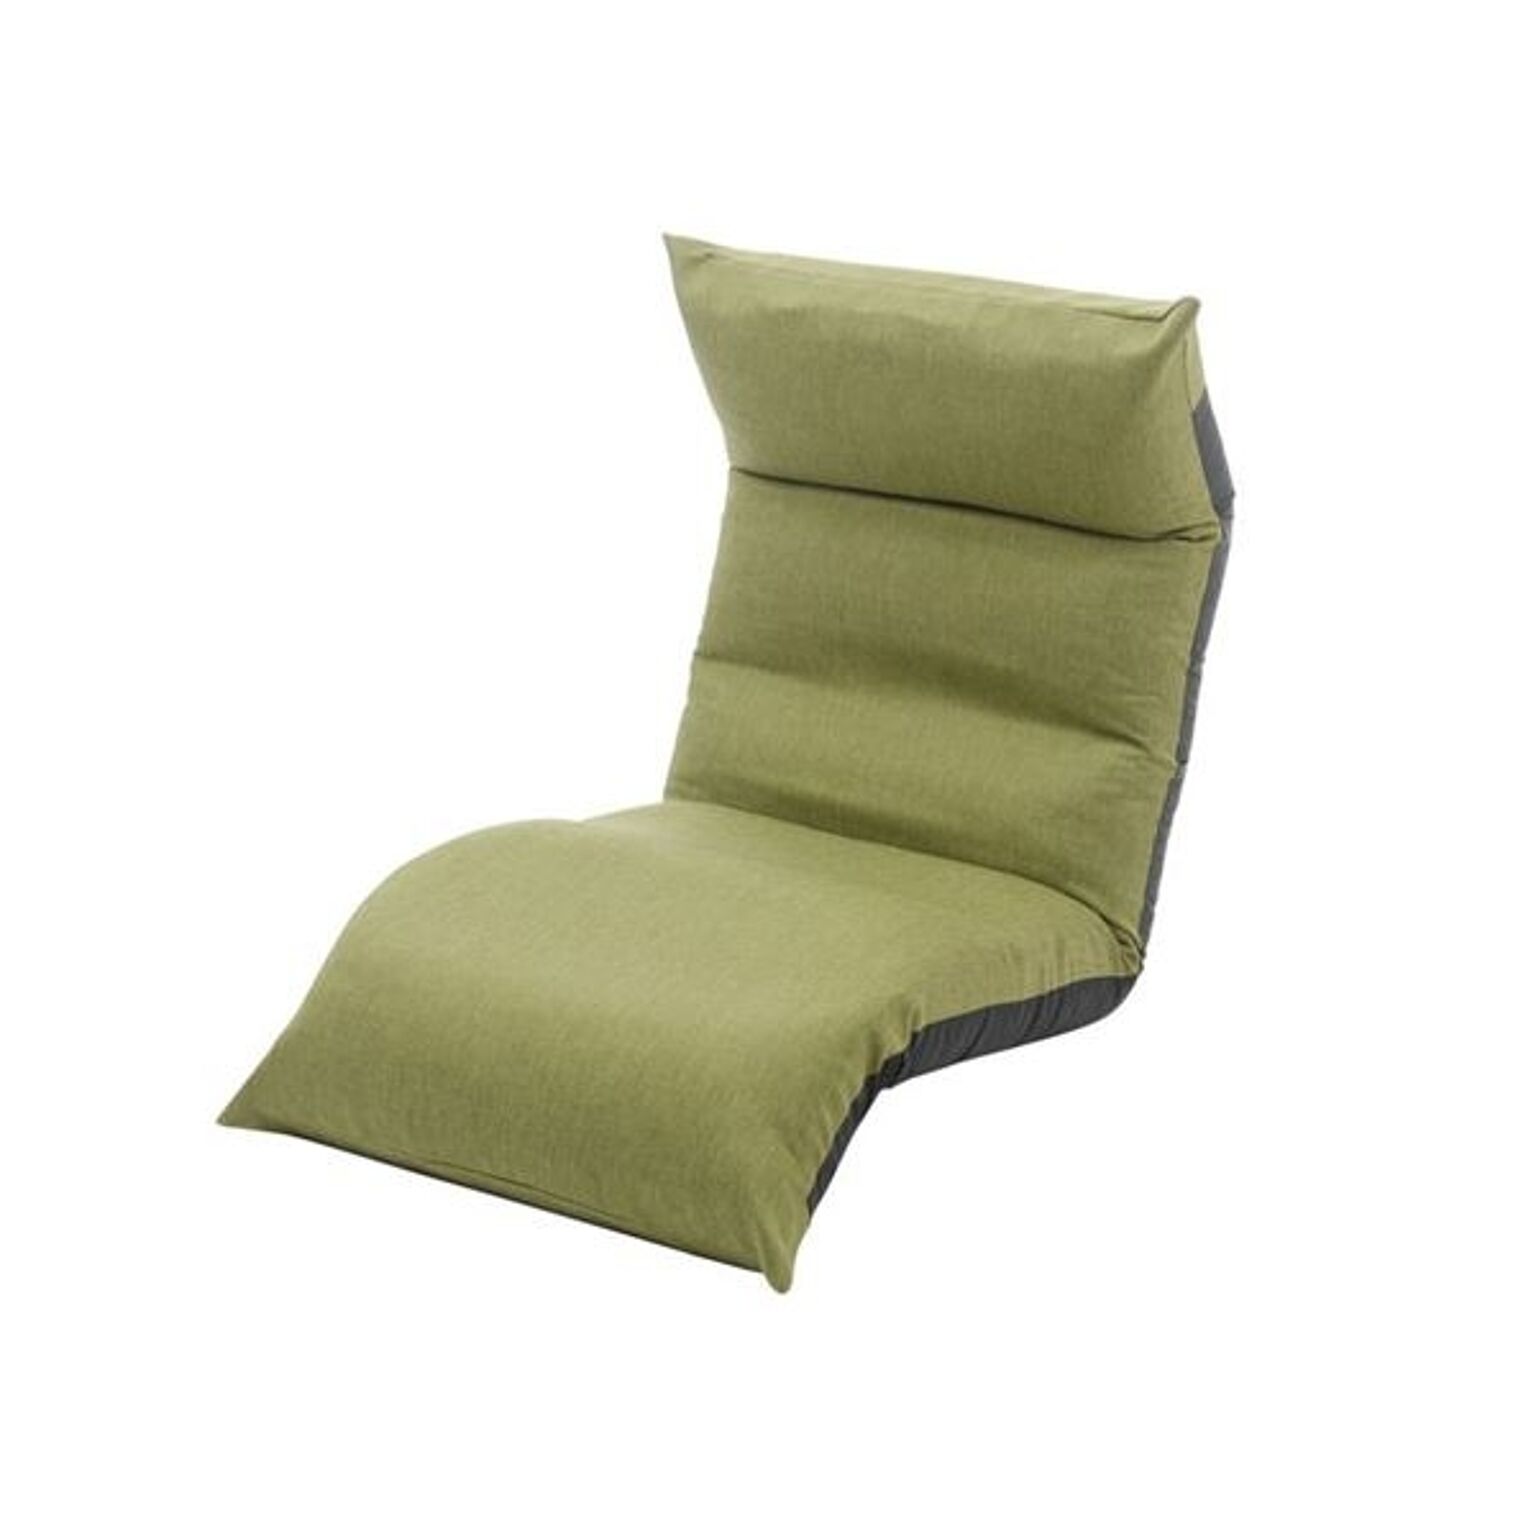 リクライニング フロアチェア/座椅子 【グリーン】 幅54cm 日本製 折りたたみ収納可 スチールパイプ ウレタン 〔リビング〕【代引不可】